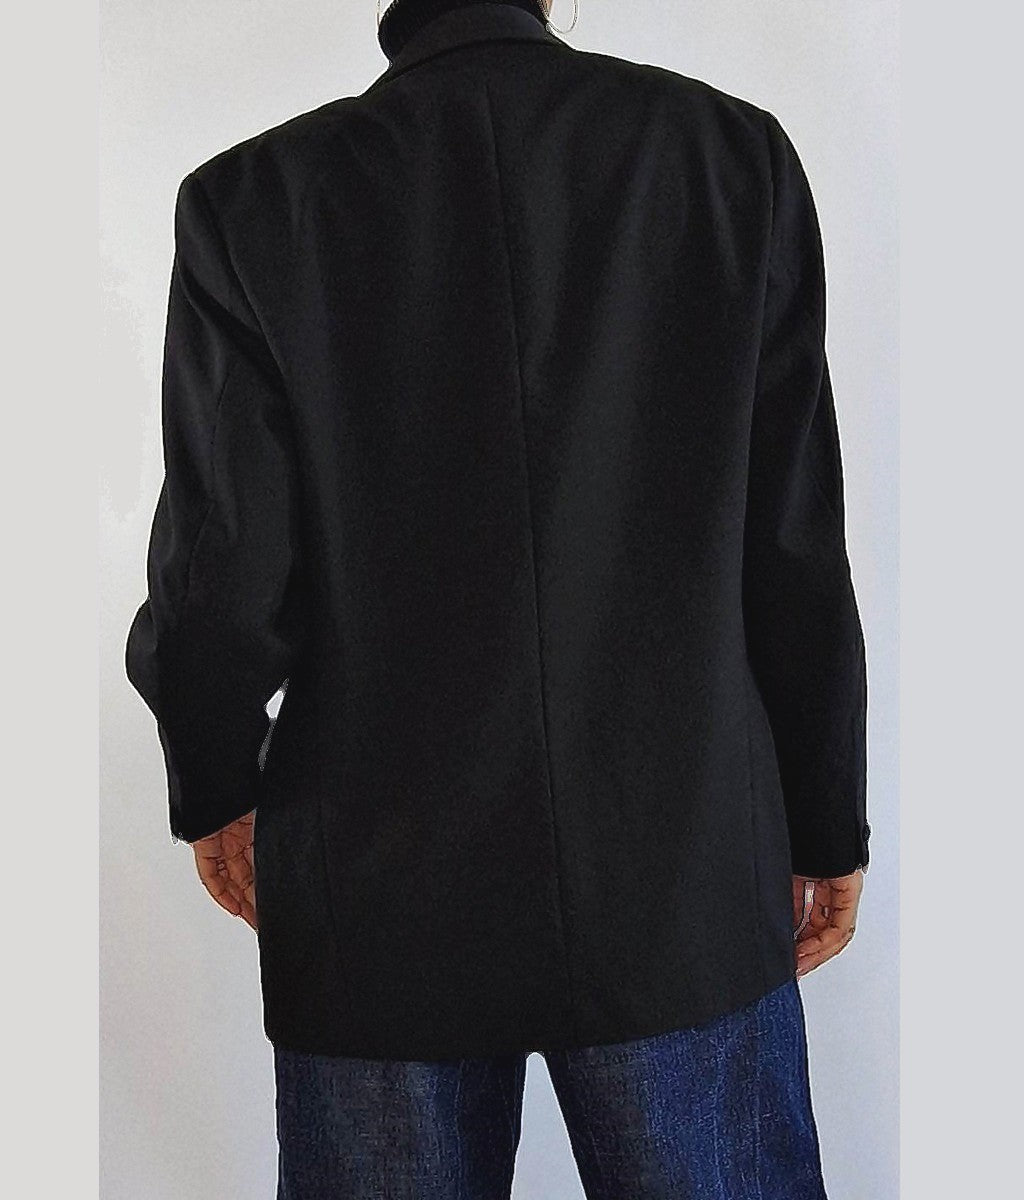 blazer veste de costume noir pour femme vintage taille small medium bruxelles belgique